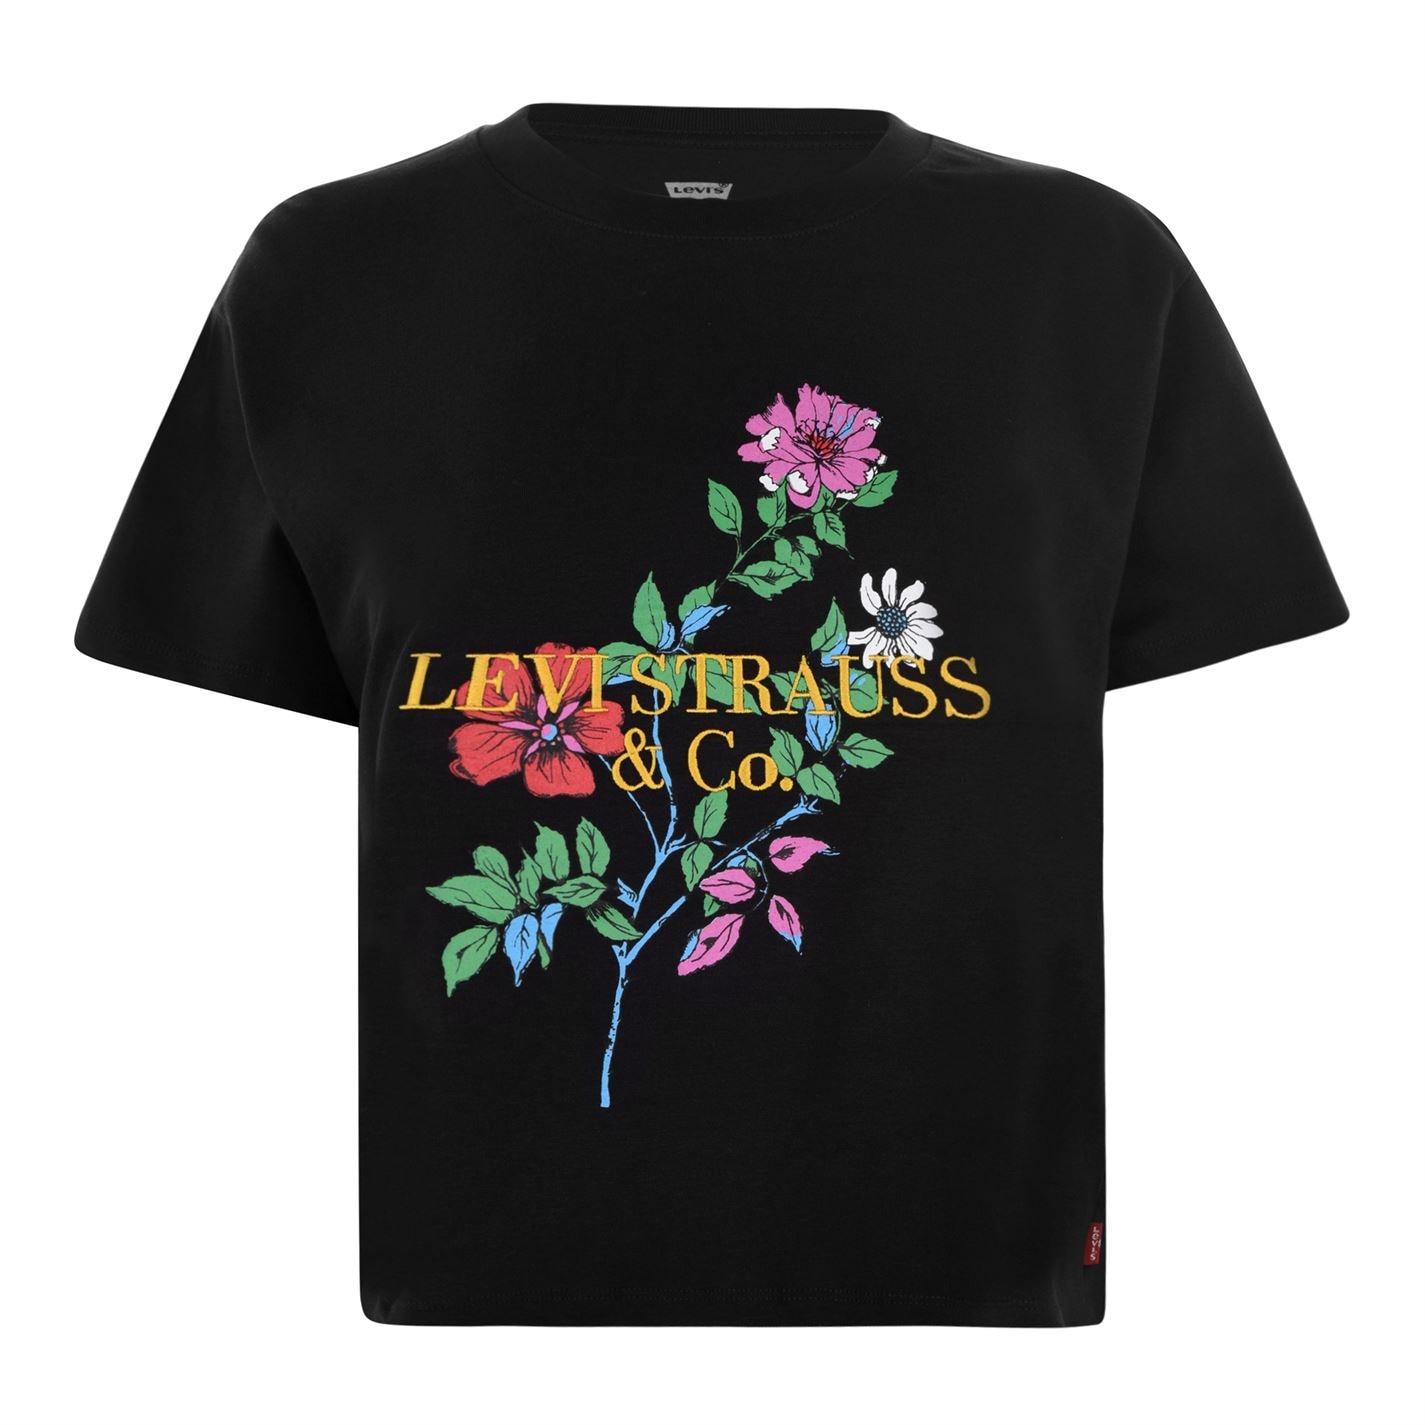 levis flower shirt